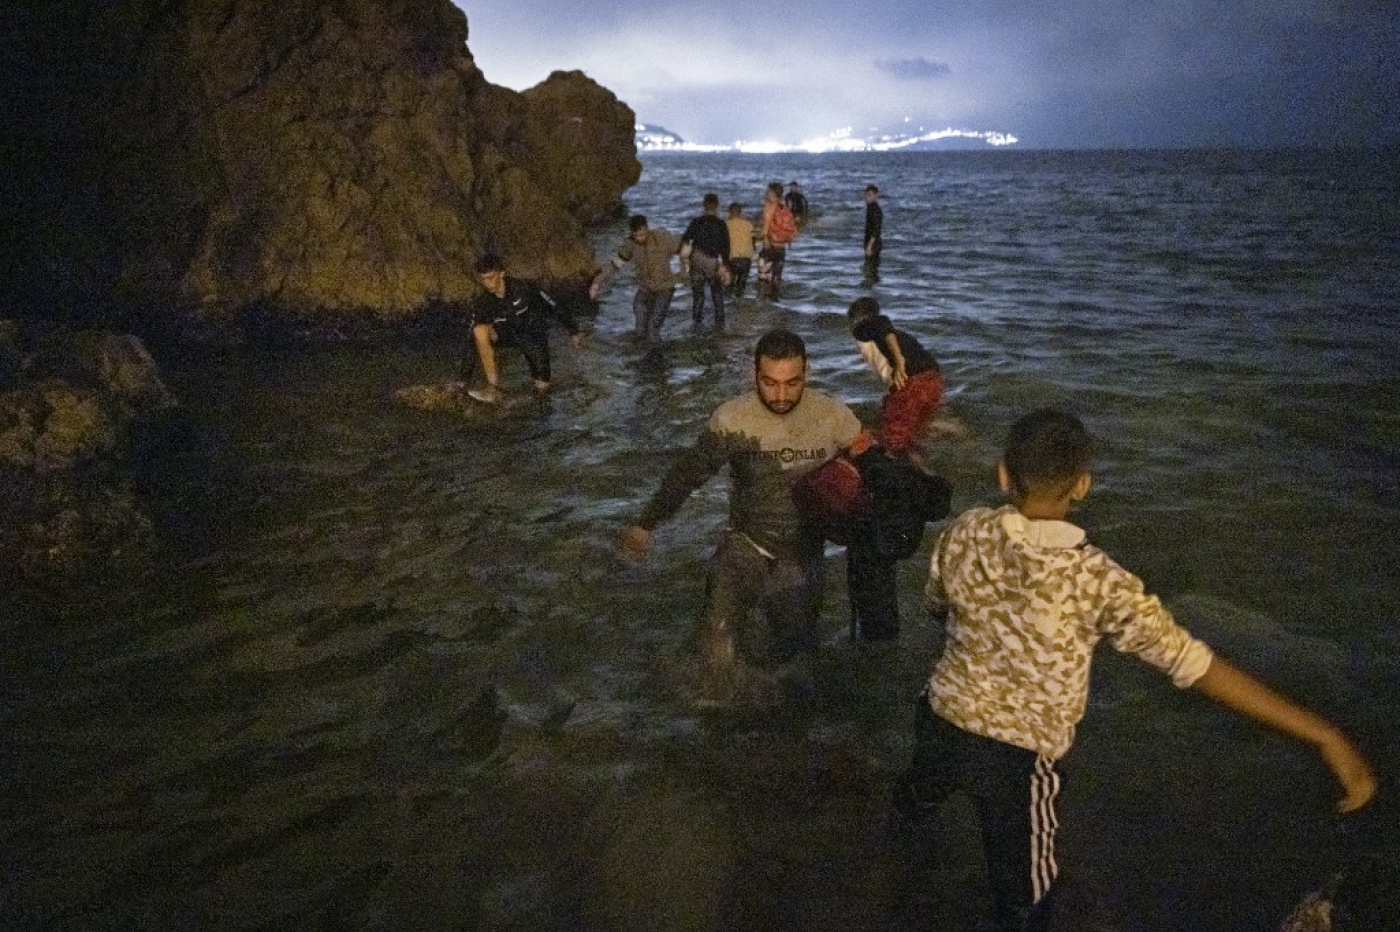 Des migrants marocains tentent de traverser la frontière entre le Maroc et l’enclave nord-africaine espagnole de Ceuta, le 18 mai 2021 (AFP)